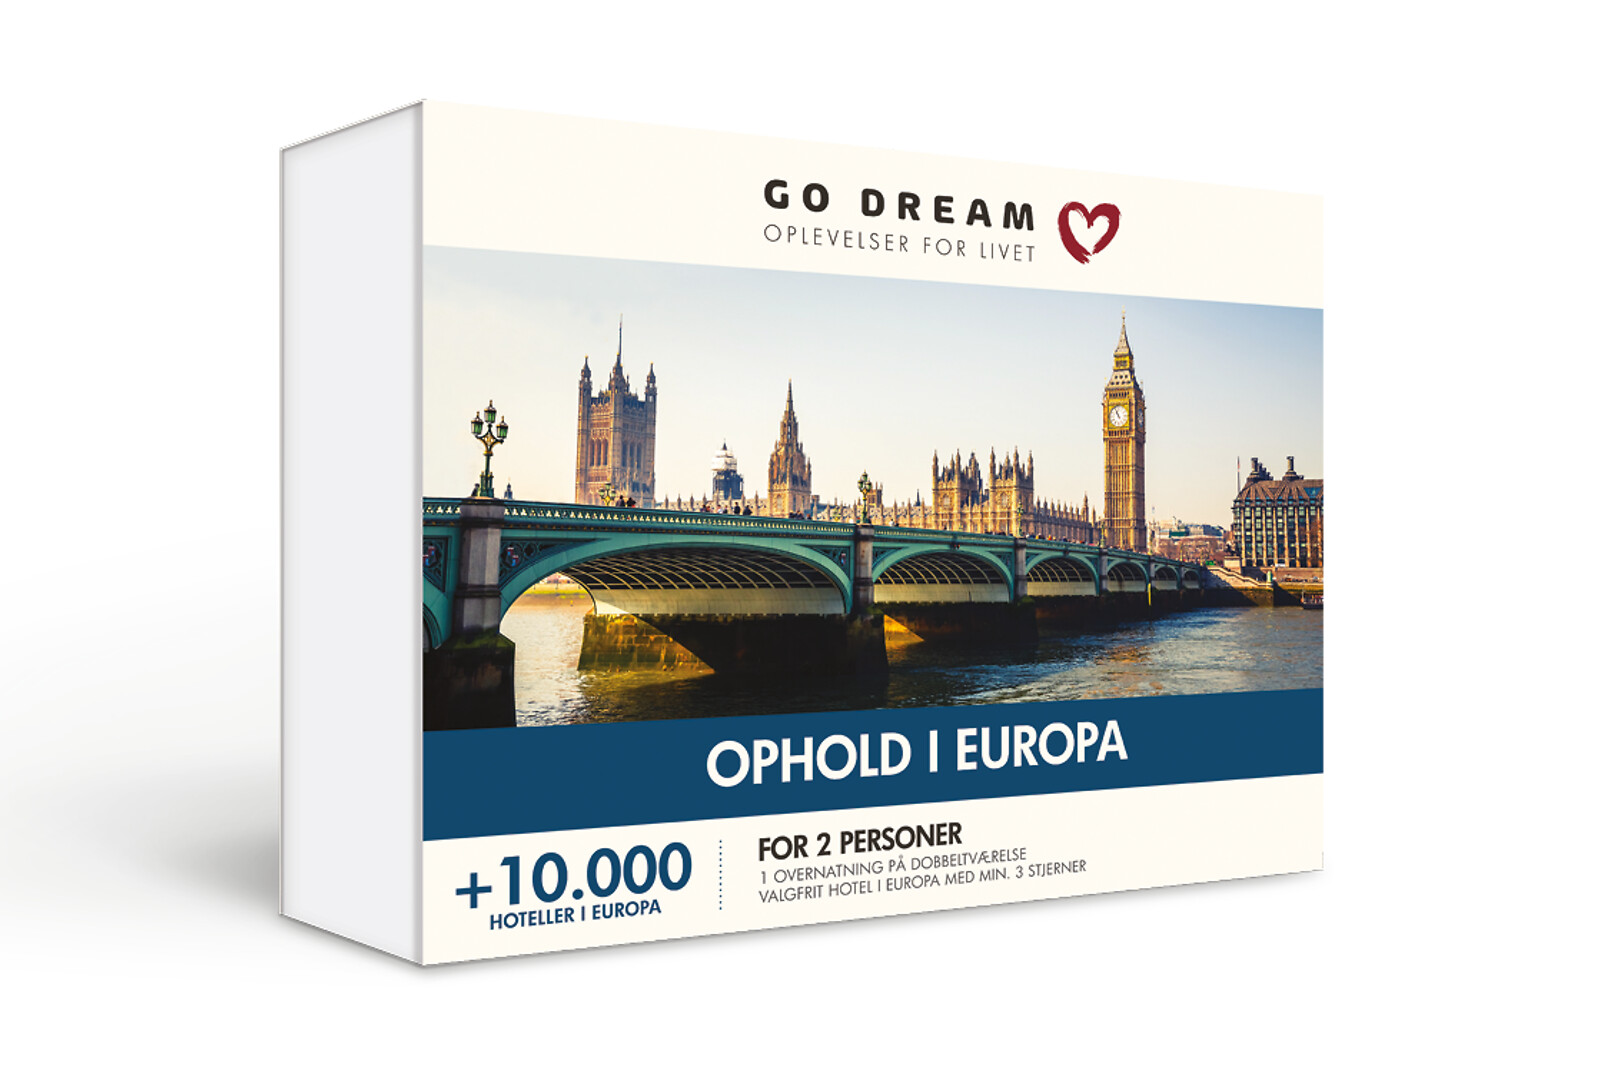 Se Ophold I Europa - Rejse og Ophold - GO DREAM hos GO DREAM DK